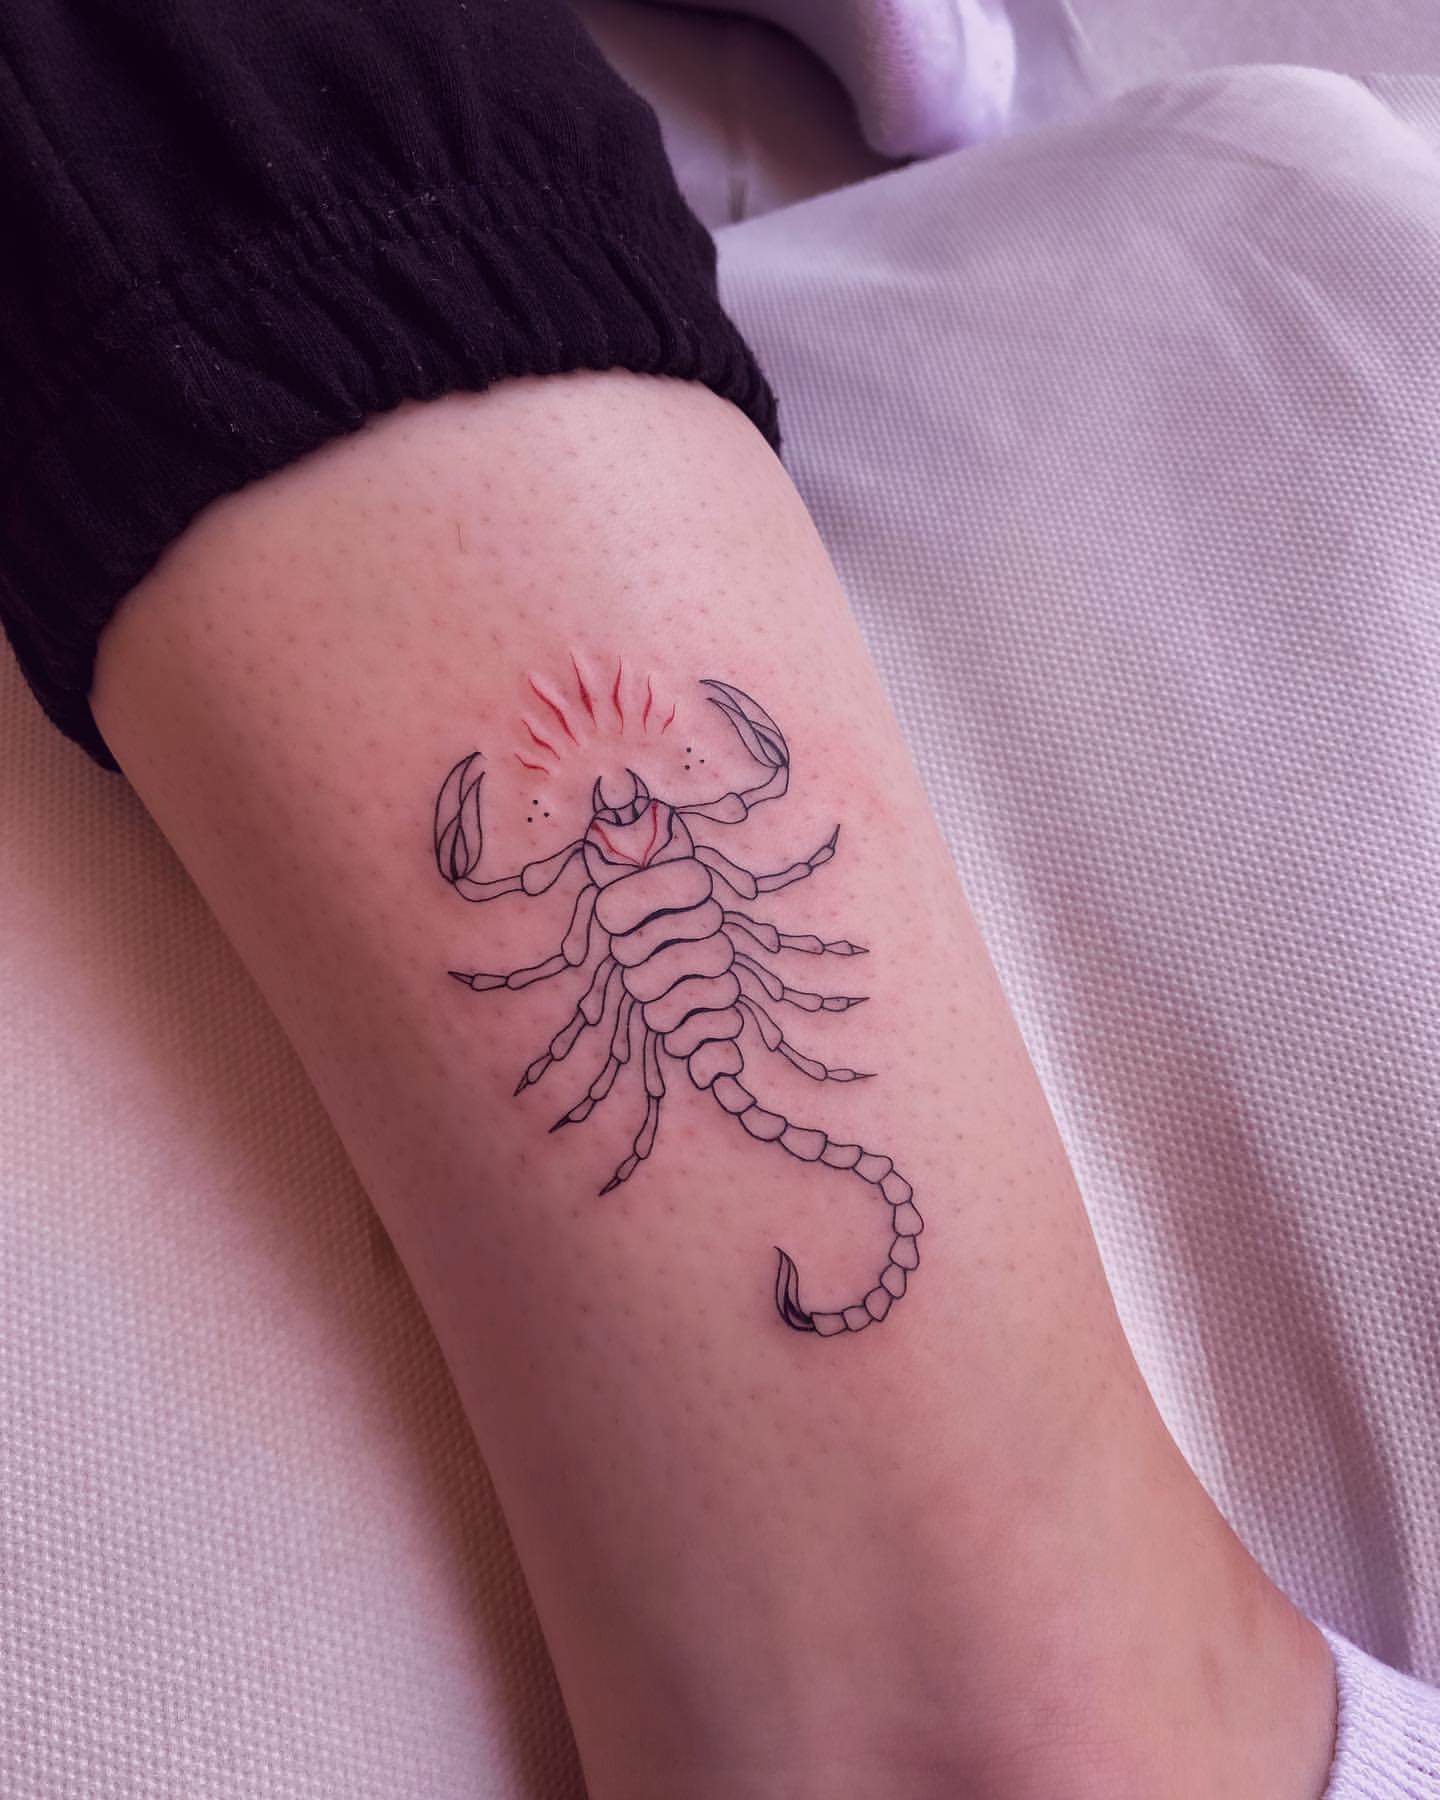 33 Outstanding Scorpion Tattoo Ideas for Men & Women in 2023